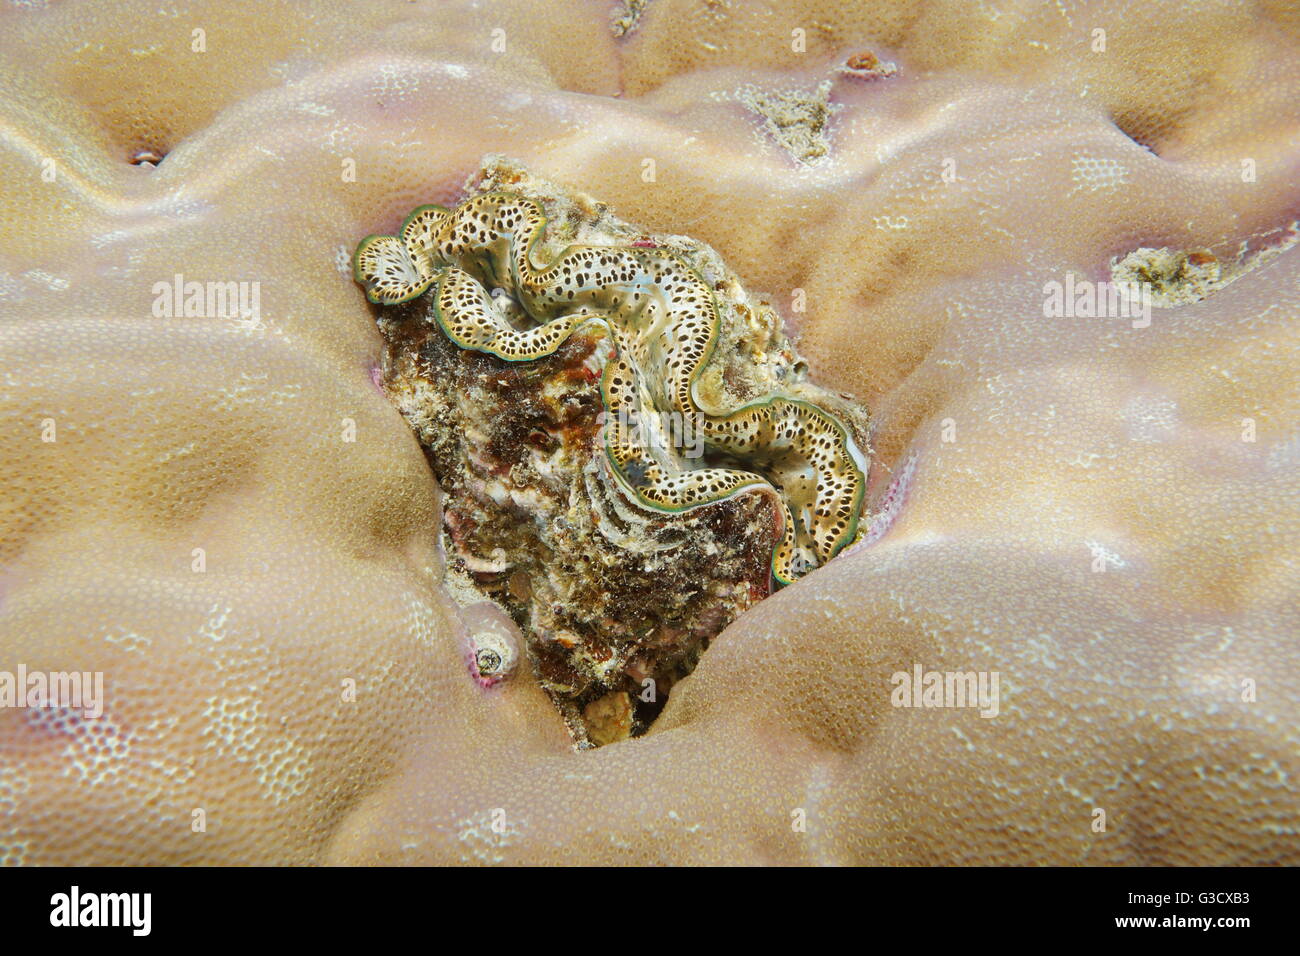 Un marine mollusco bivalve maxima clam Tridacna maxima, incrostato in corallo, oceano pacifico, Tahiti, Polinesia Francese Foto Stock